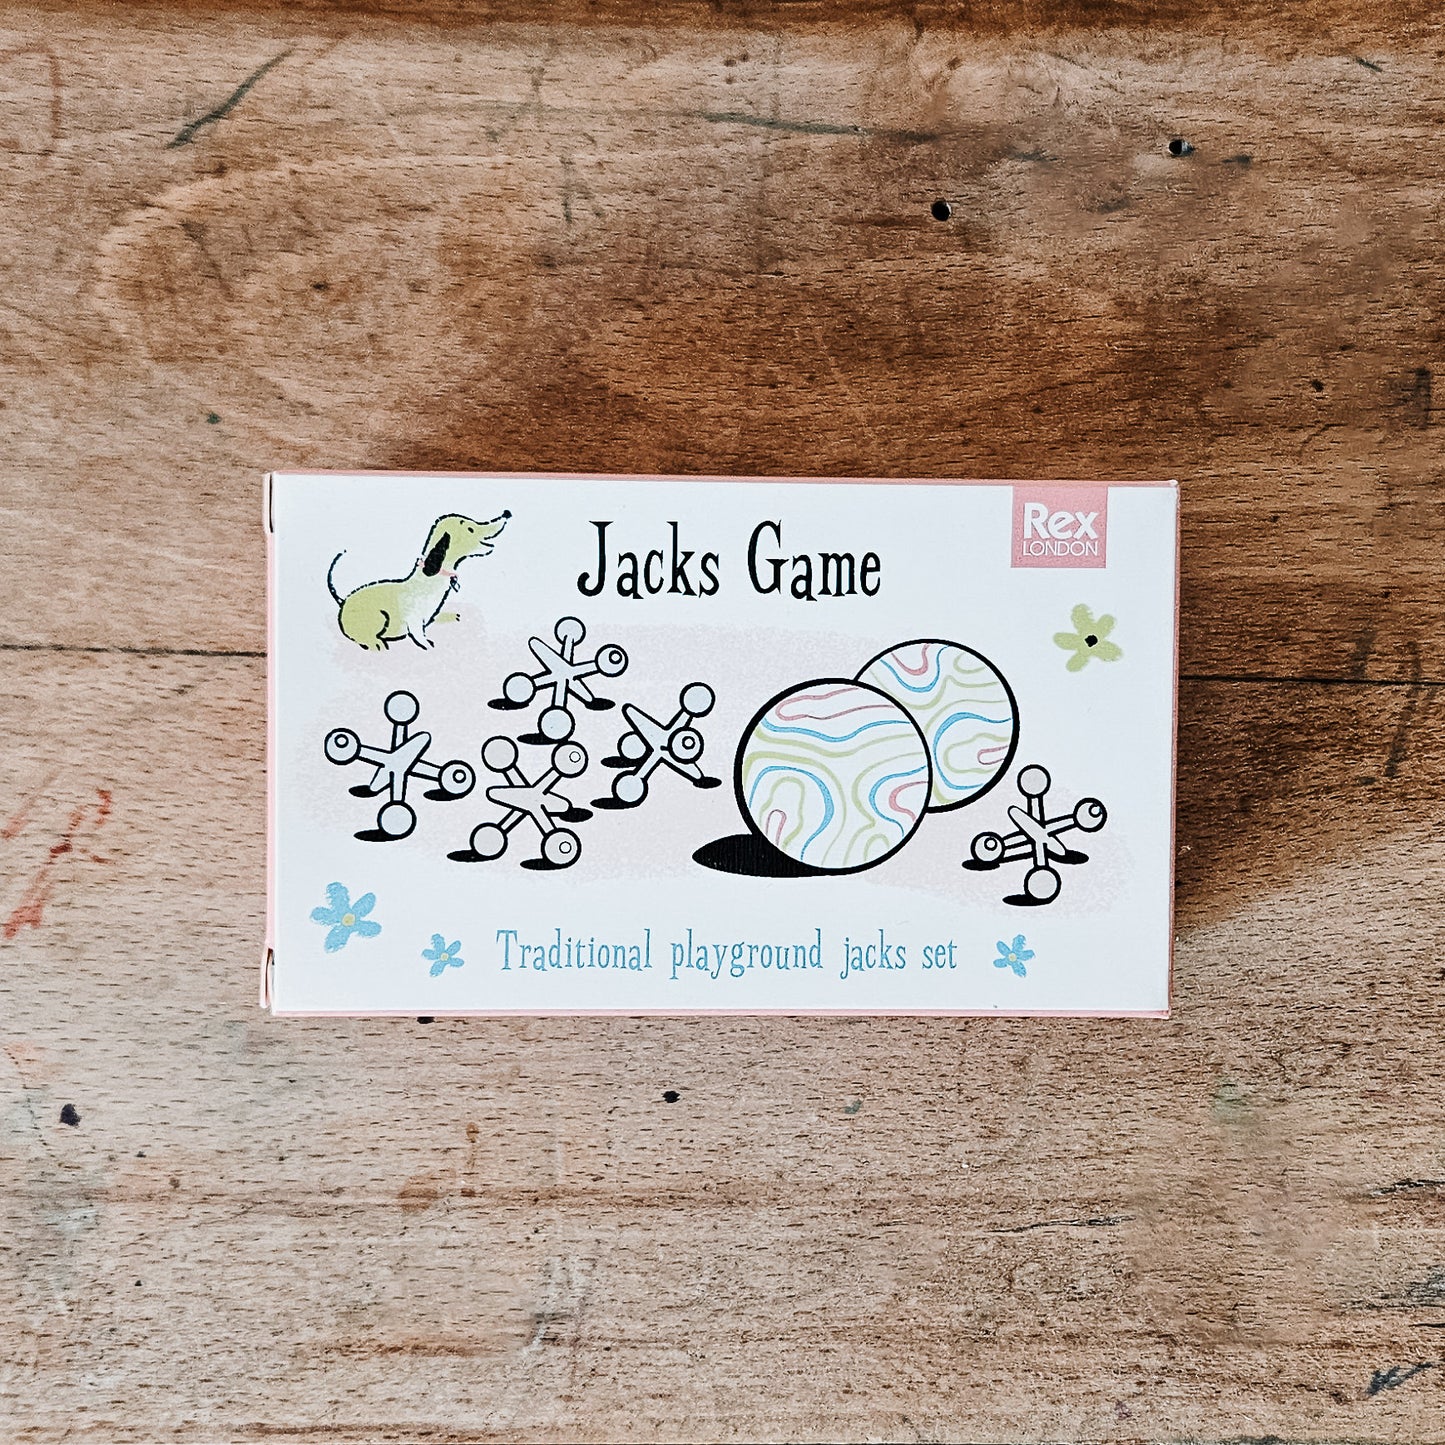 Jacks Game est le jeu d'osselets traditionnel, retro, rangé dans un pochon, avec notice. Rex london.